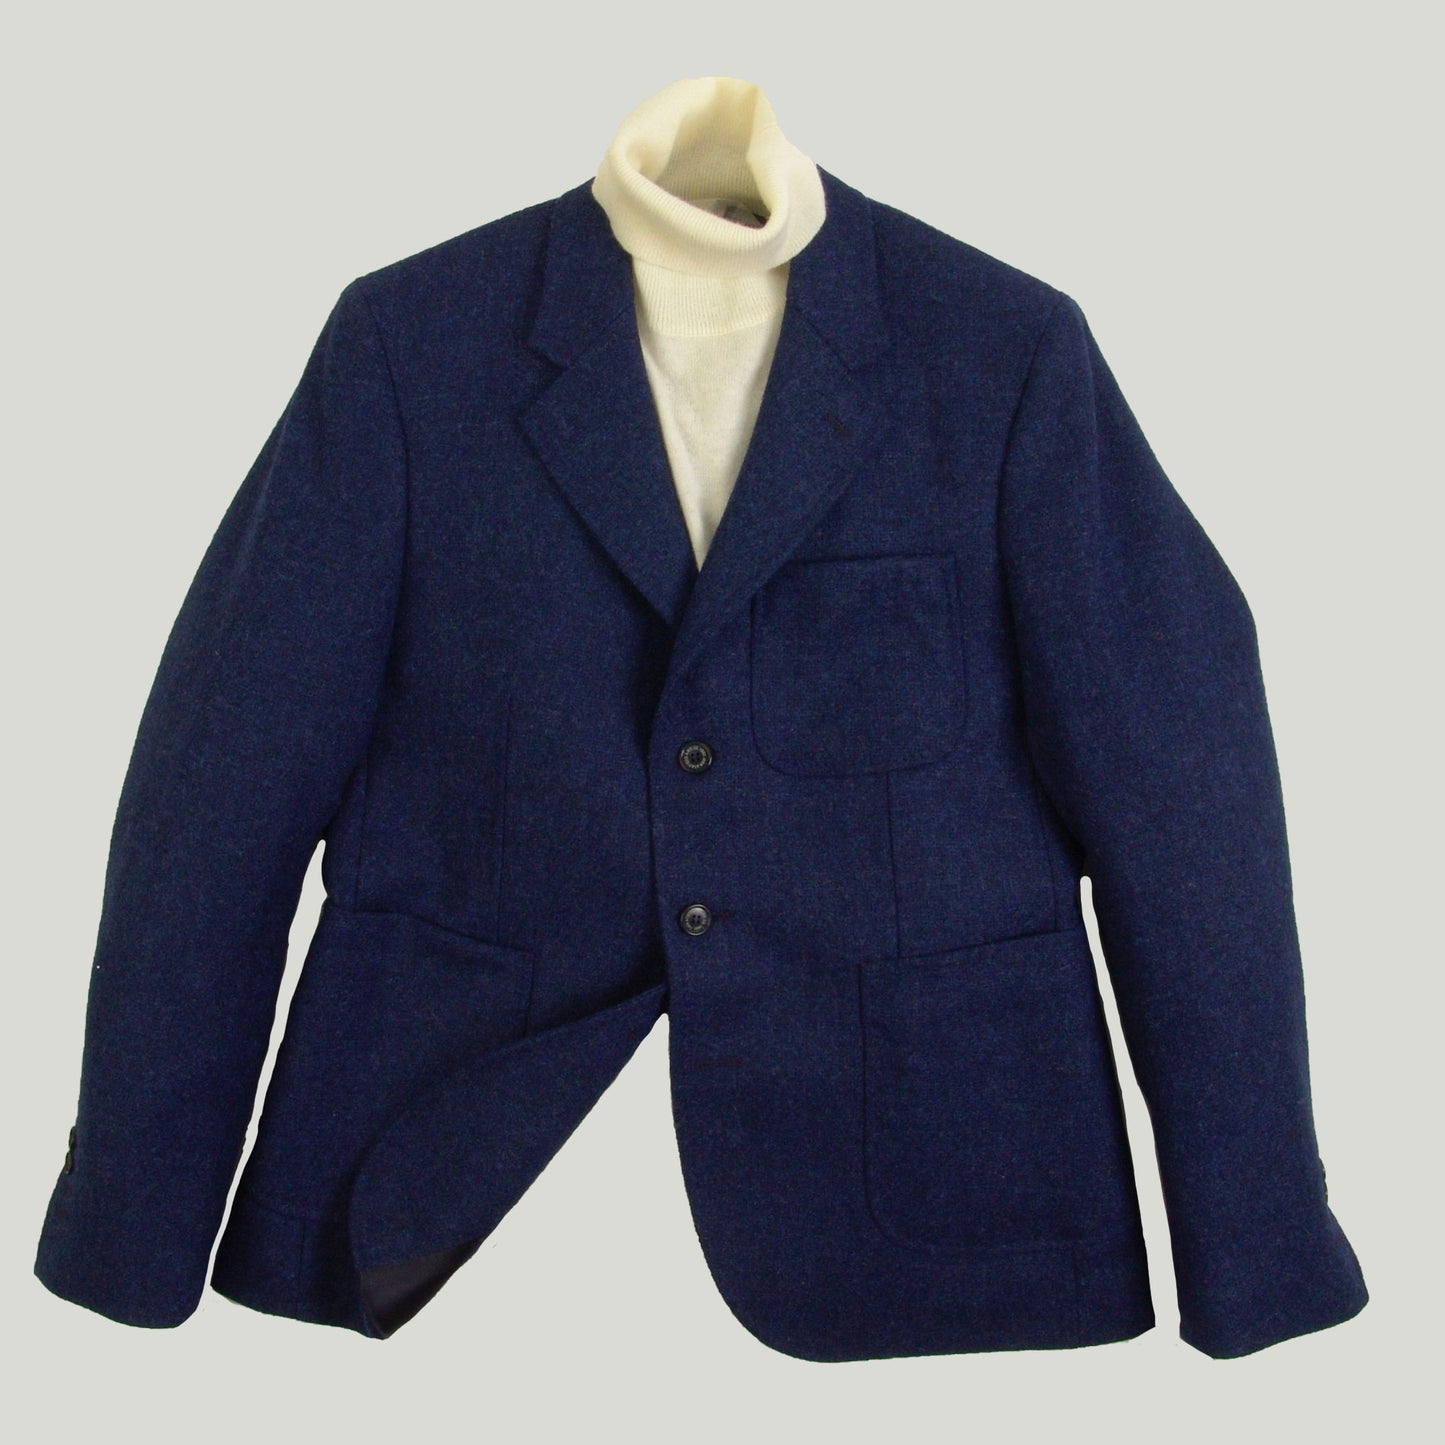 3-Button Jacket in Shetland Wool for Men